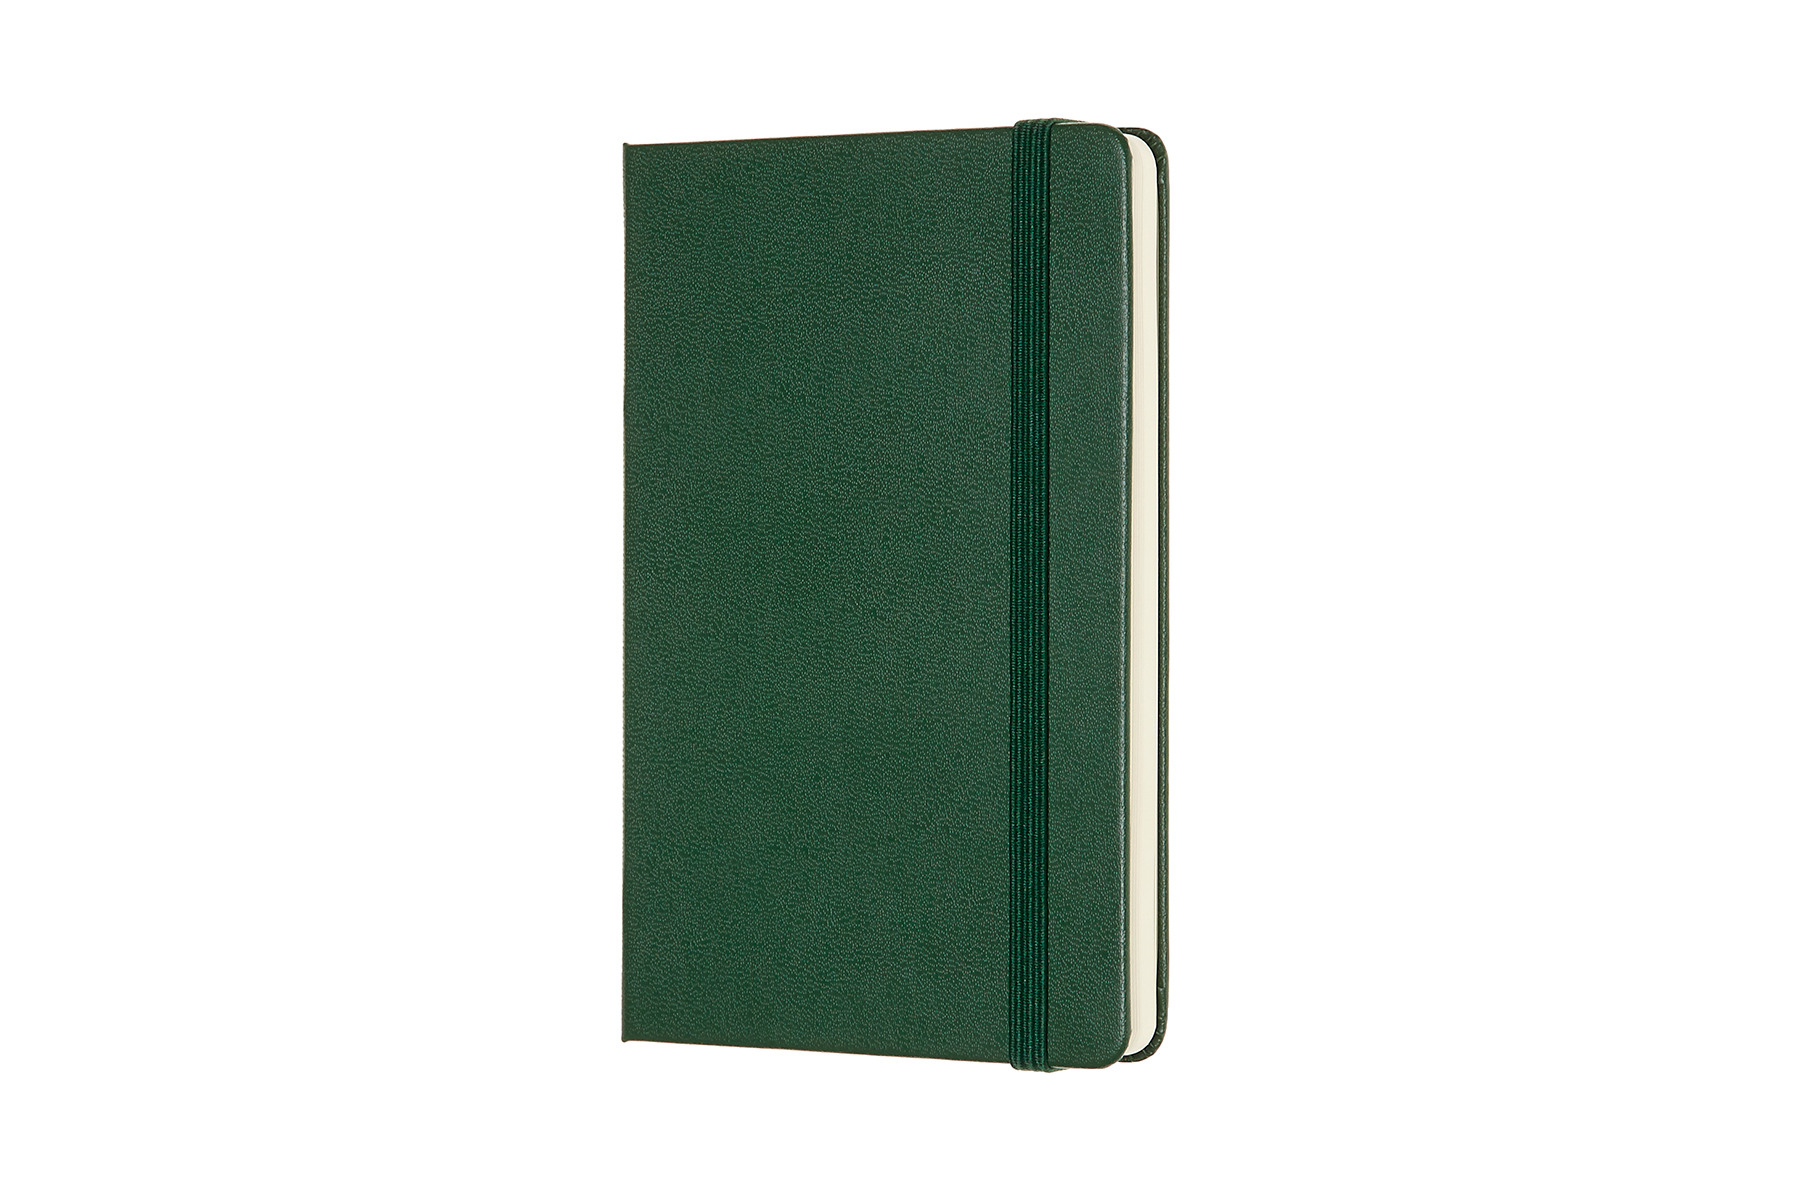 MOLESKINE Carnet HC P/A6 629032 en blanc, vert, 192 pages